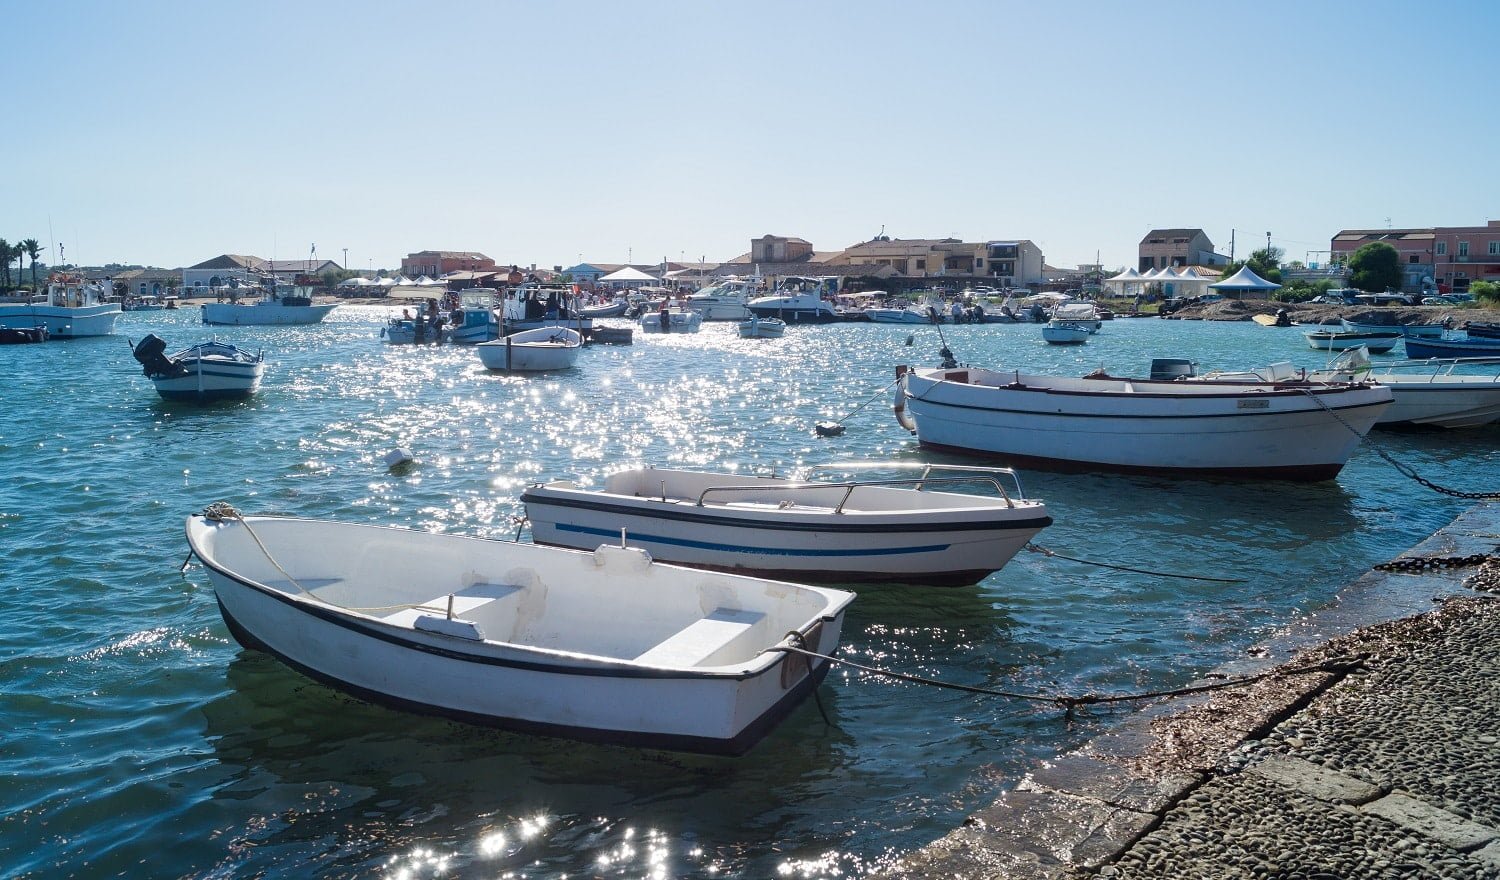 small harbor of the sea village Marzamemi, Southeast Sicily